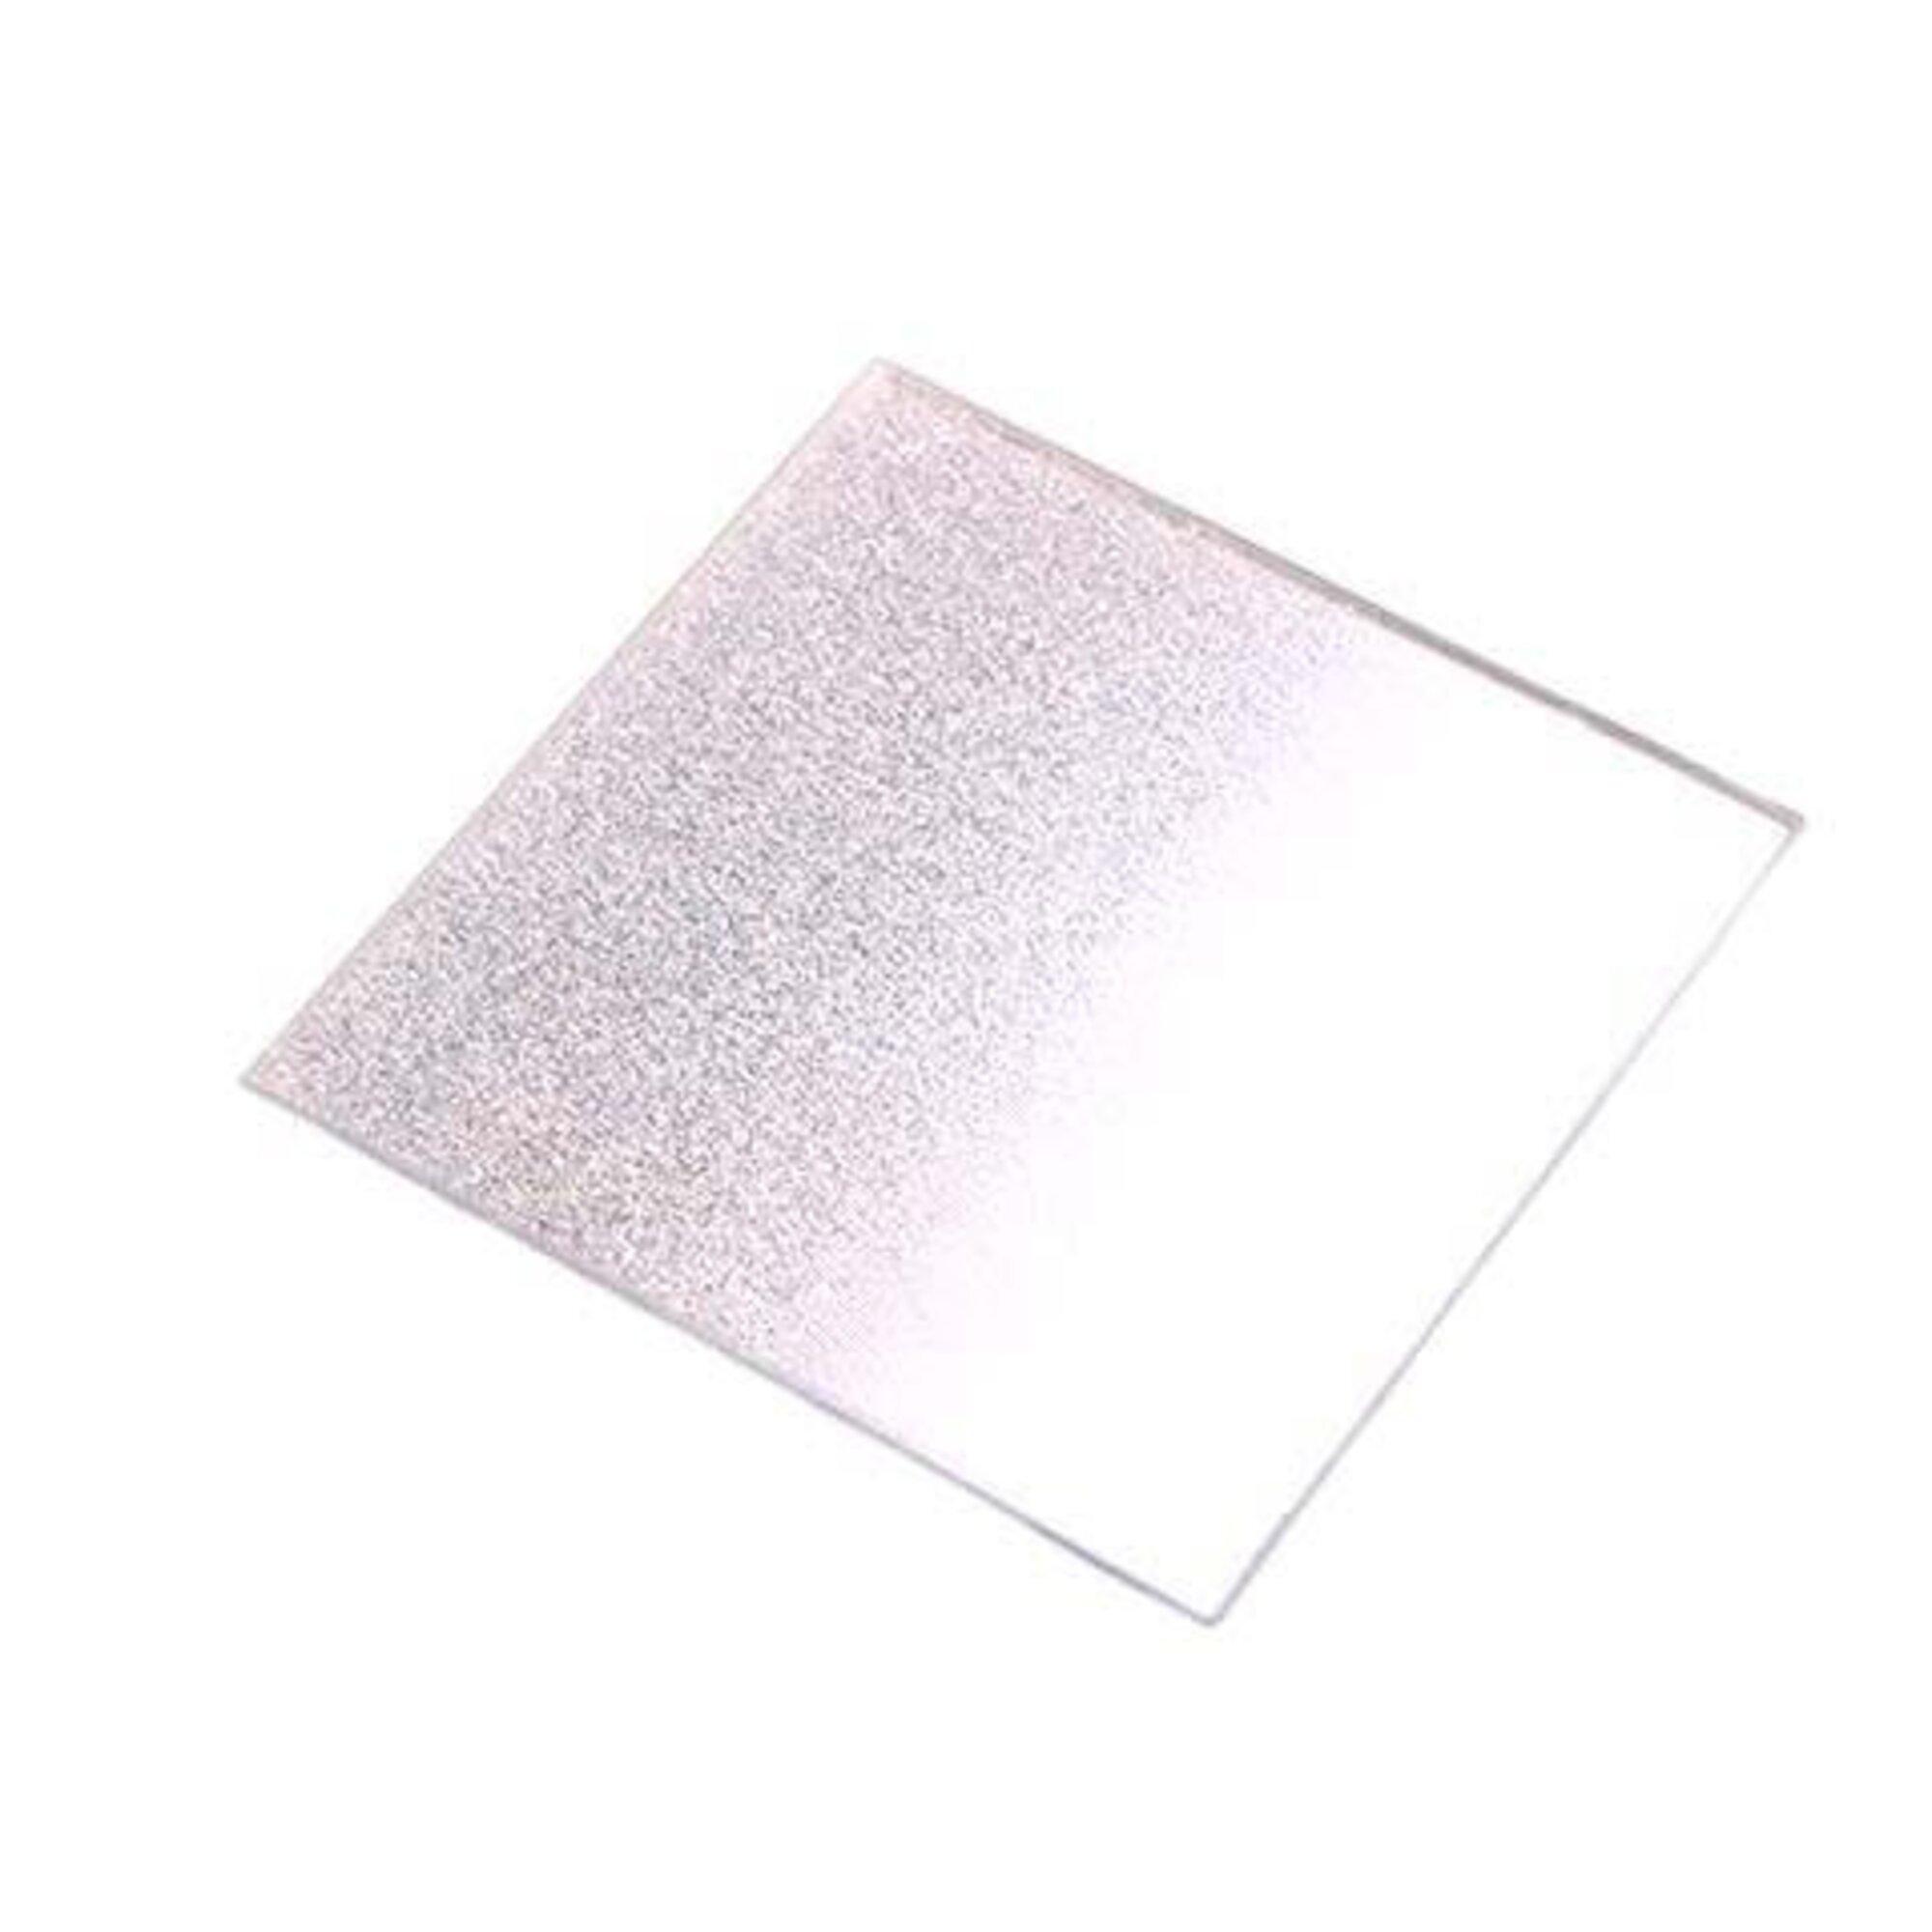 Speilfat m/glimmer på halvparten - Sølv - 10 cm x 10 cm